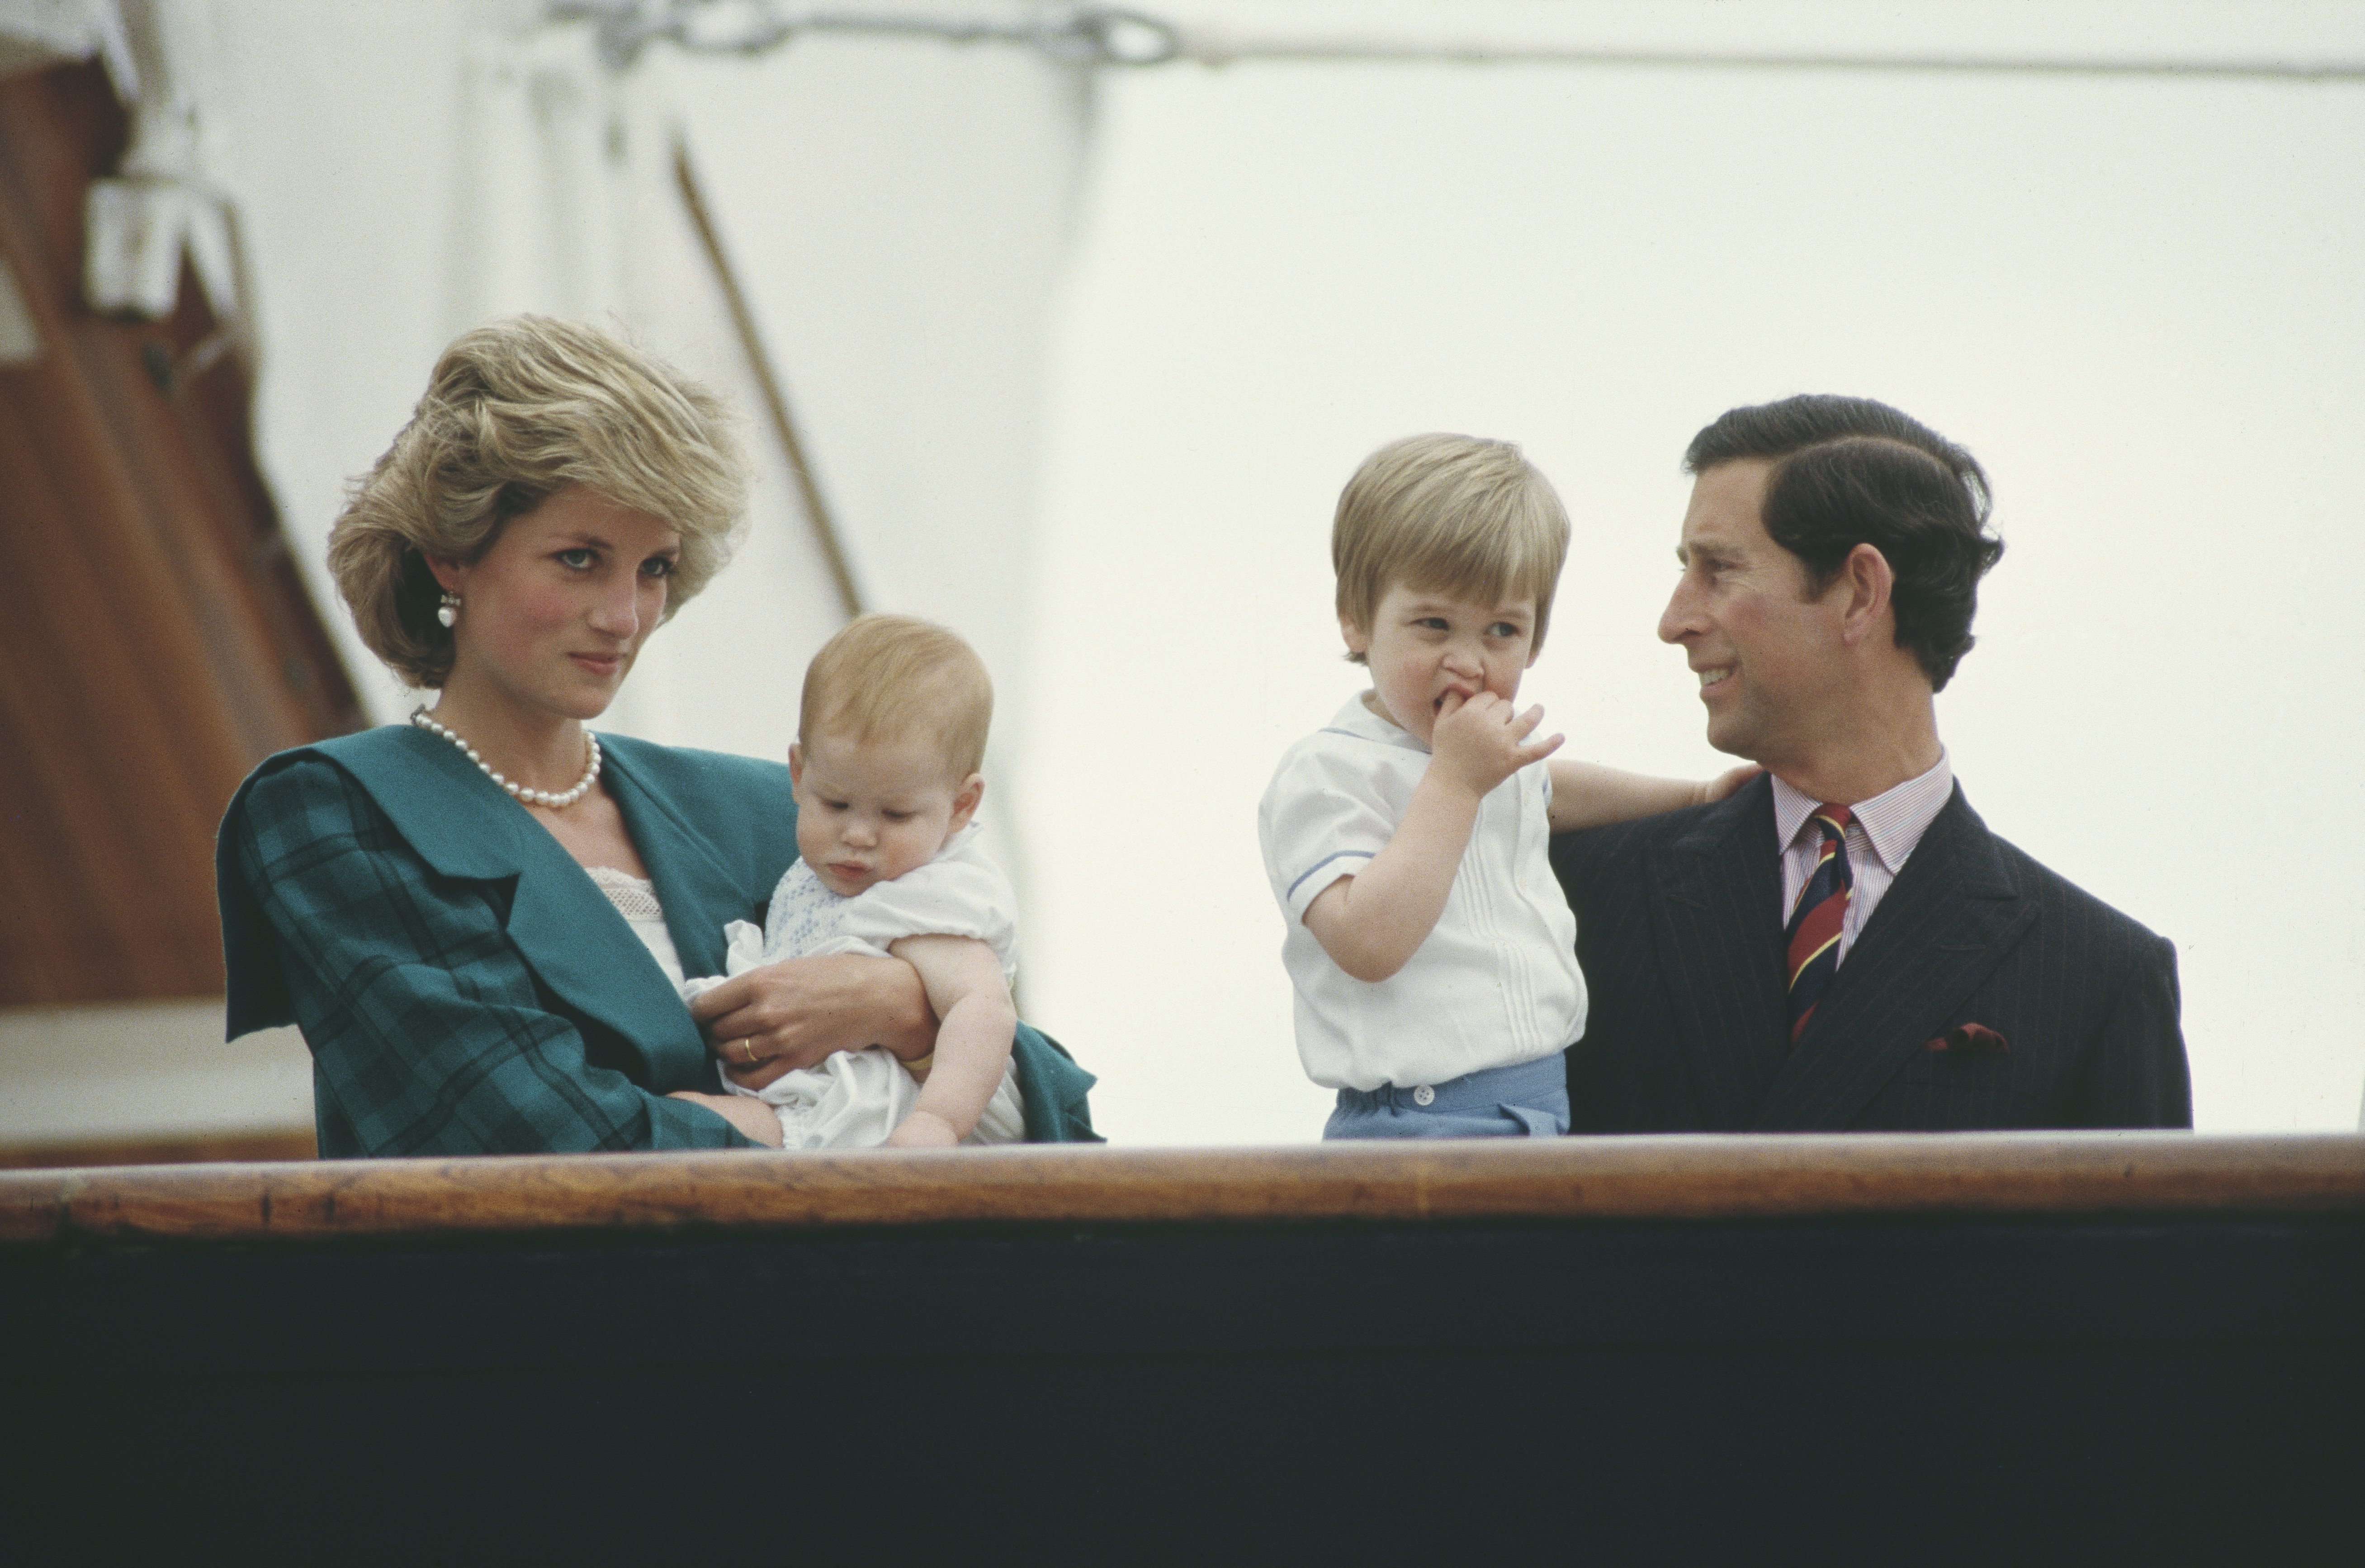 Prinz Charles und Diana, Prinzessin von Wales, auf der königlichen Yacht "Britannia" mit ihren Söhnen William und Harry bei einem Besuch in Venedig, Italien, April 1985 | Quelle: Getty Images